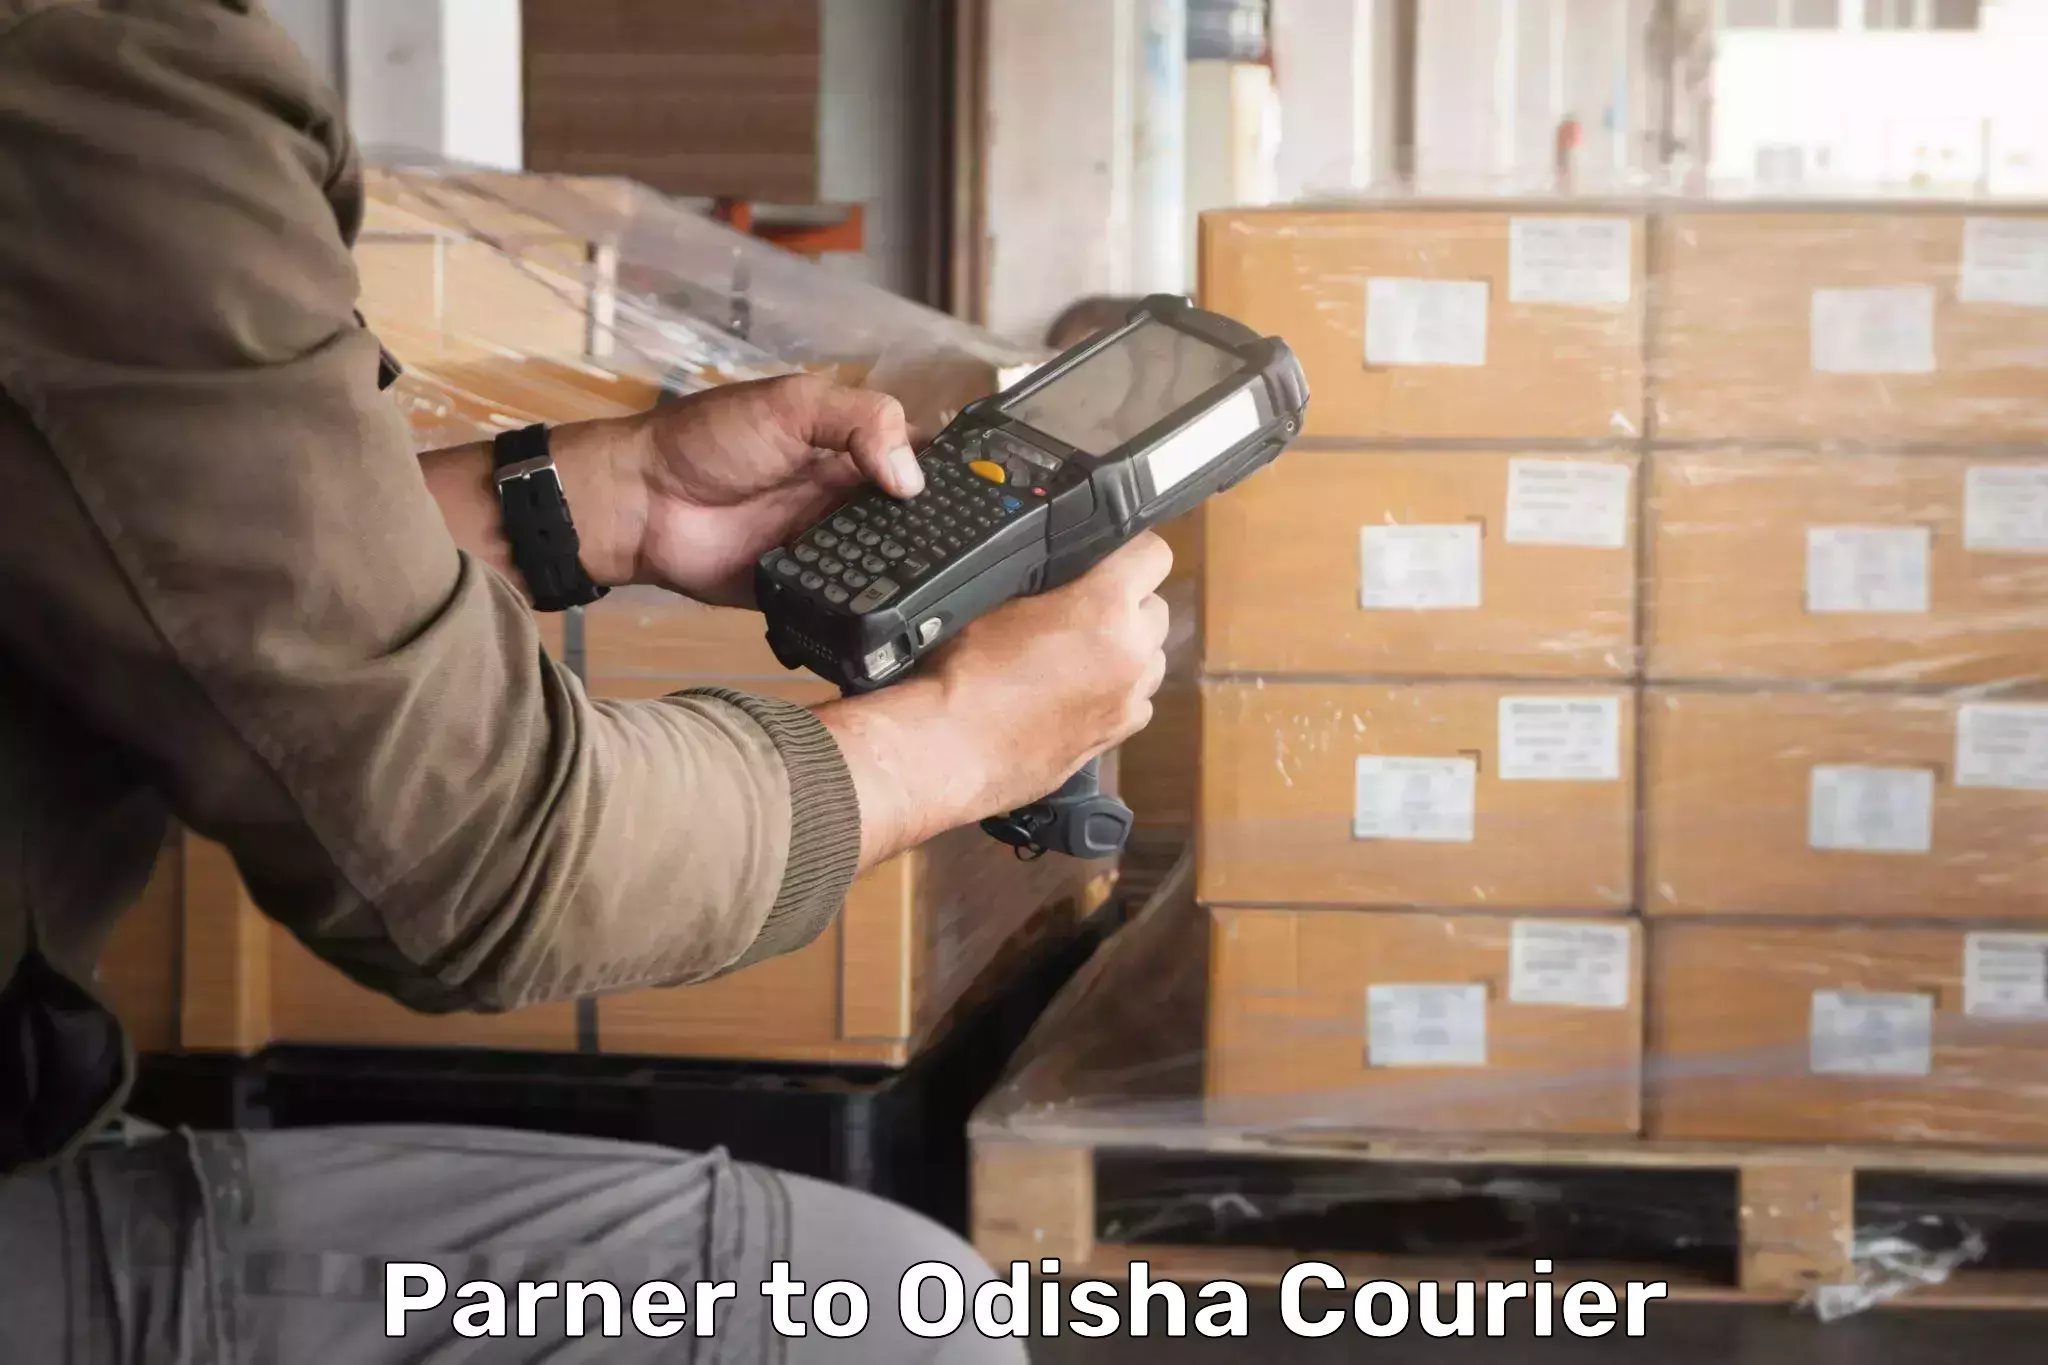 Courier service comparison Parner to Kalahandi